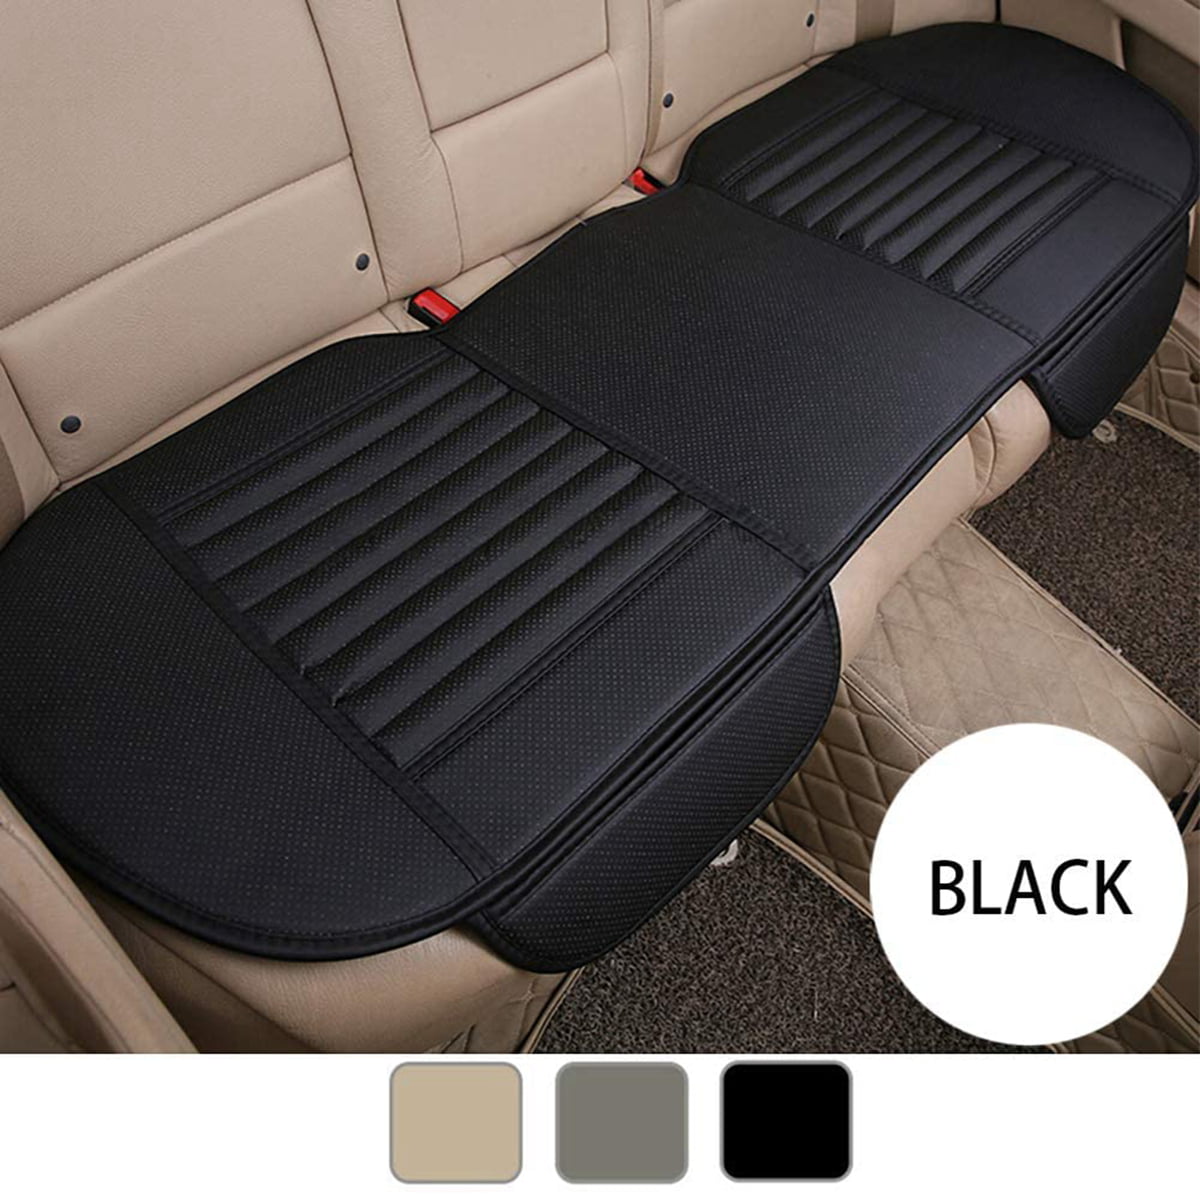 Black Universal Rear Car Seat Cover Plush Protector Non-Slip Mat Chair Cushion